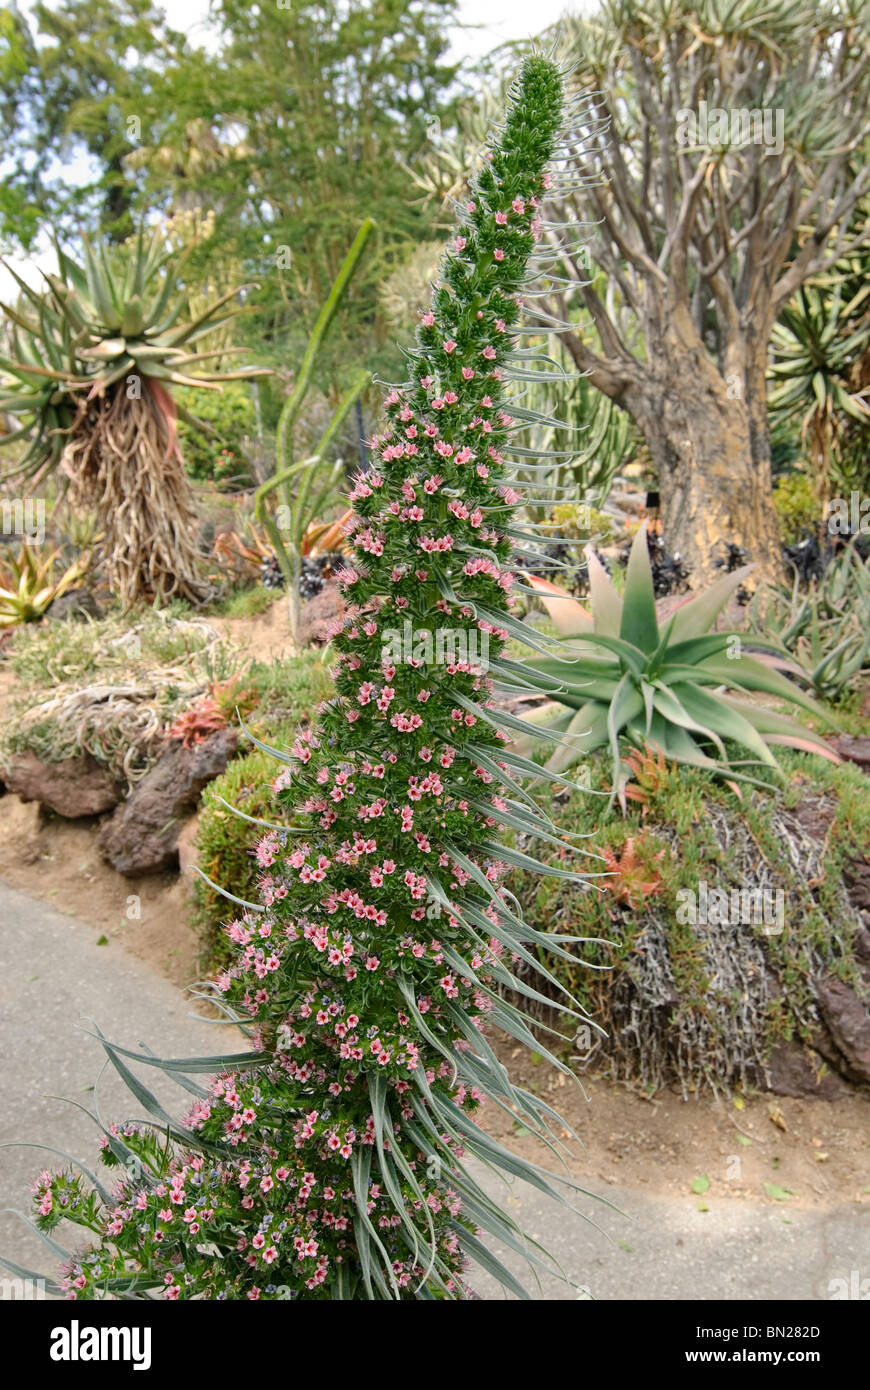 Der Tower of Jewels Pflanze, Echium Wildpretii ist eine Krautartige zweijährige Pflanze, die auf den Kanarischen Inseln endemisch ist. Stockfoto